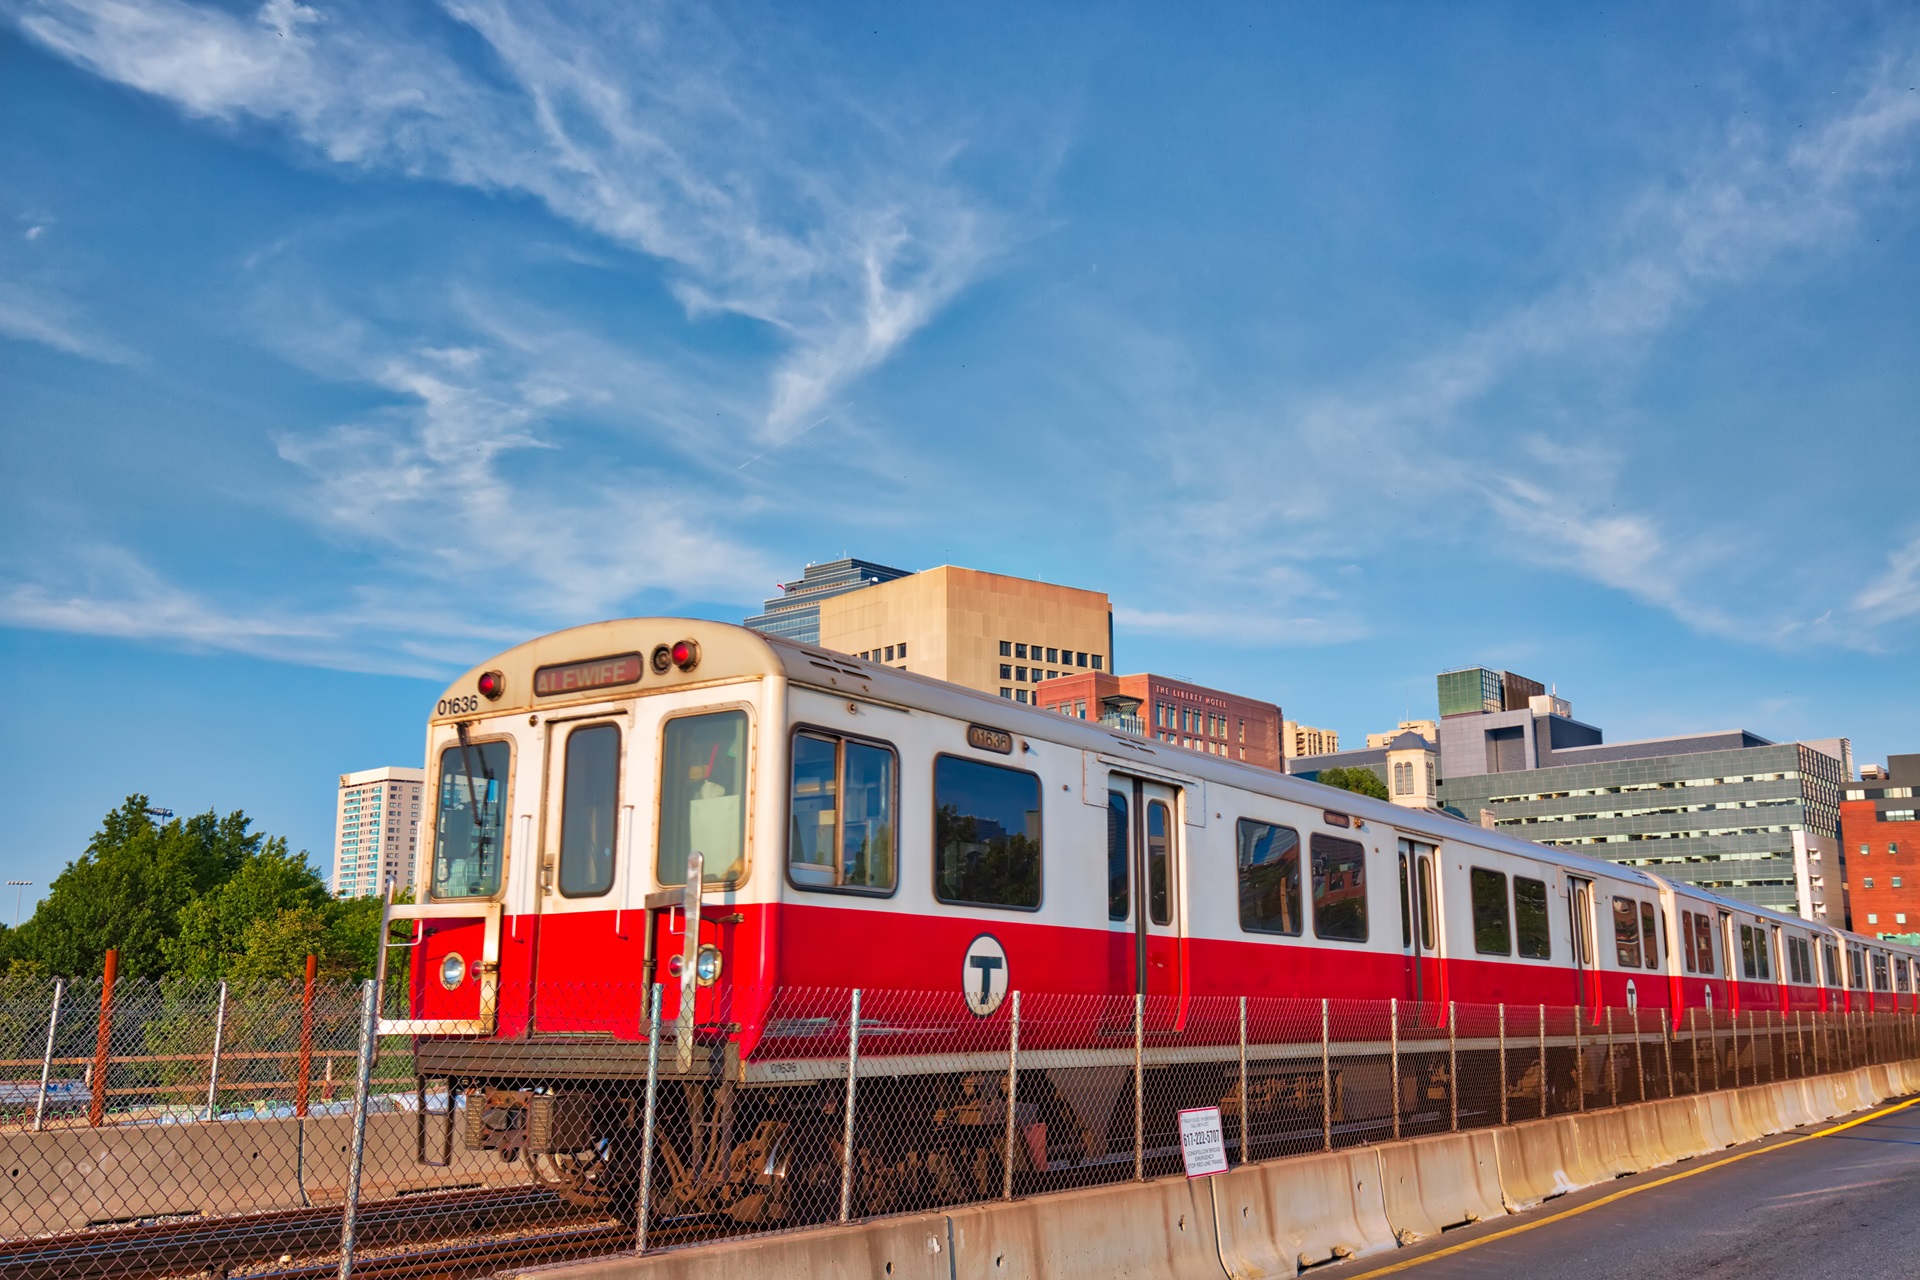 An MBTA red line train runs down surface tracks under a bright blue sky